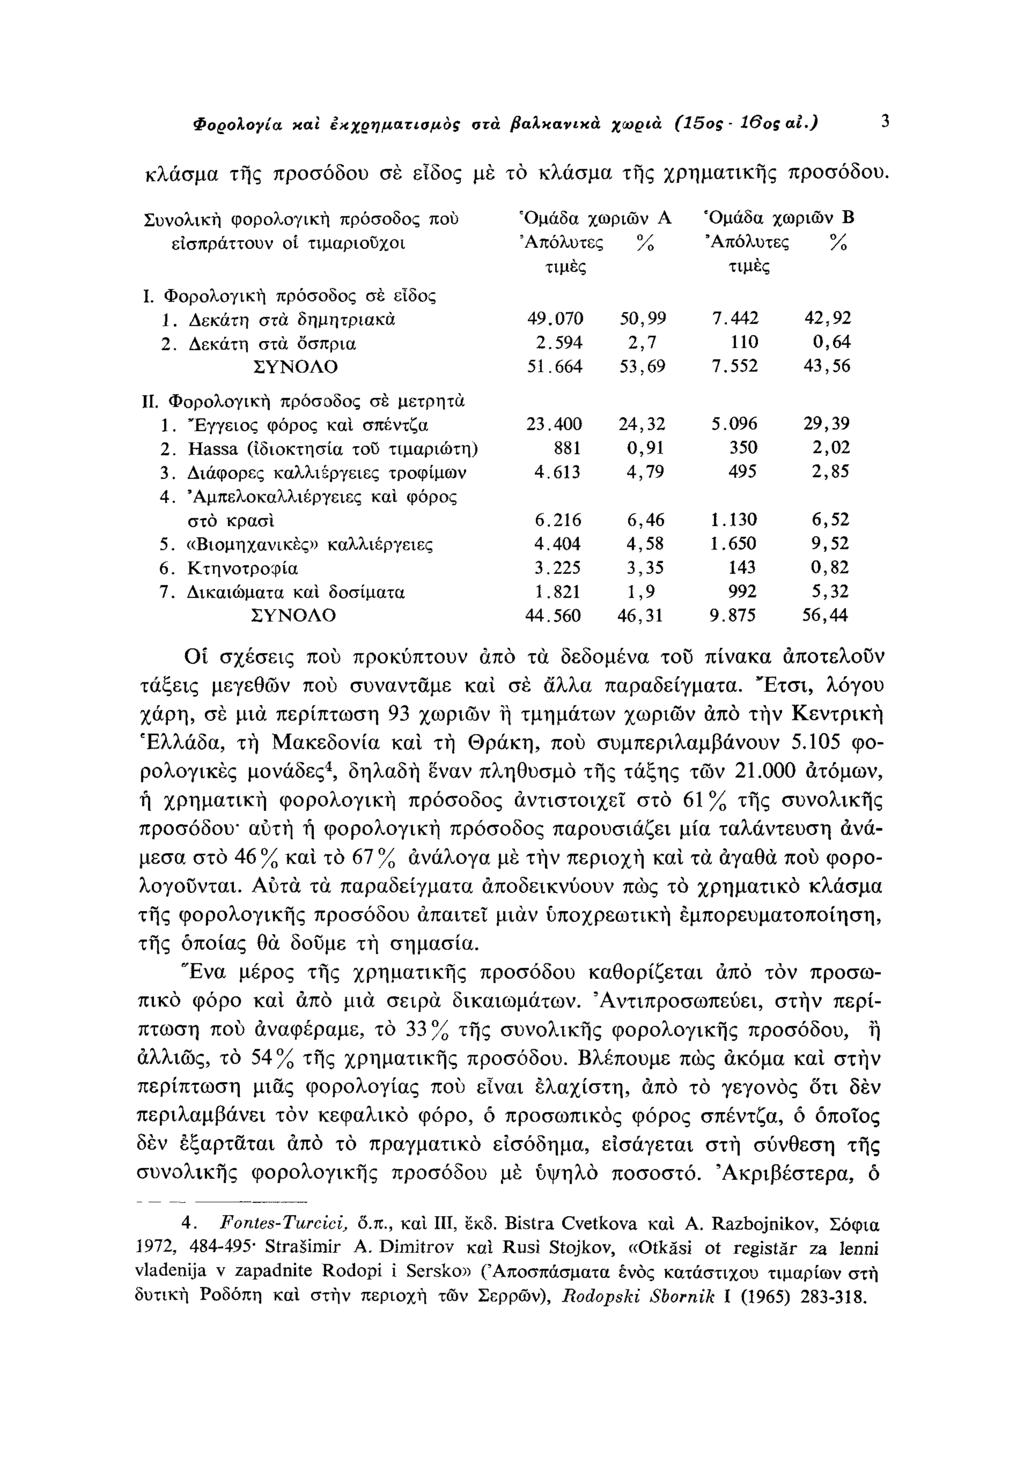 Φορολογία και εκχρηματισμός στα βαλκανικά χωριά (15ος 16ος ai.) 3 κλάσμα της προσόδου σε είδος με το κλάσμα της χρηματικής προσόδου. Συνολική φορολογική πρόσοδος που εισπράττουν οι τιμαριούχοι Ι.